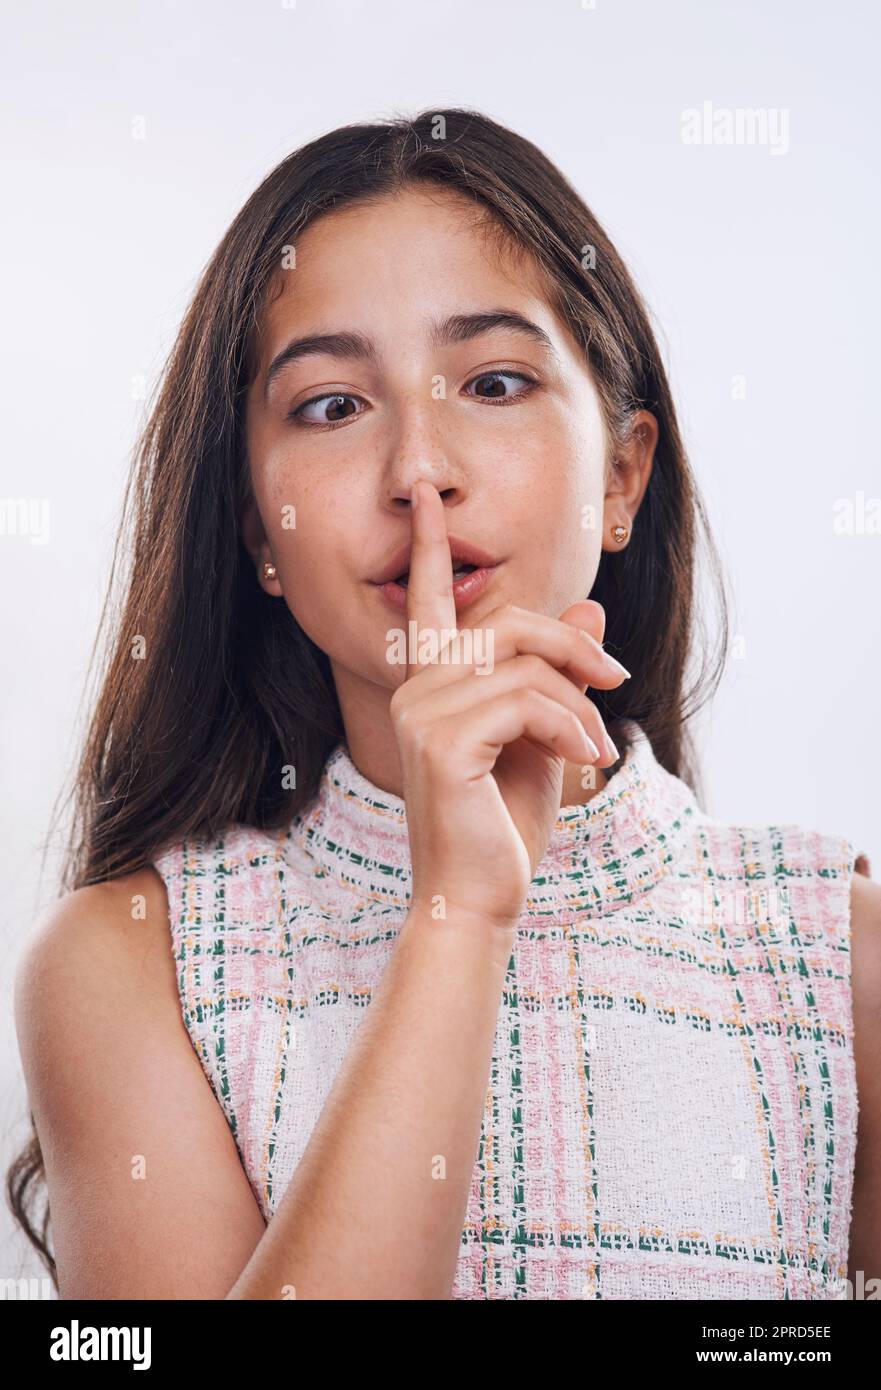 Sei du selbst. ein attraktives Teenager-Mädchen, das mit dem Finger auf den Lippen vor einem weißen Studiohintergrund steht. Stockfoto